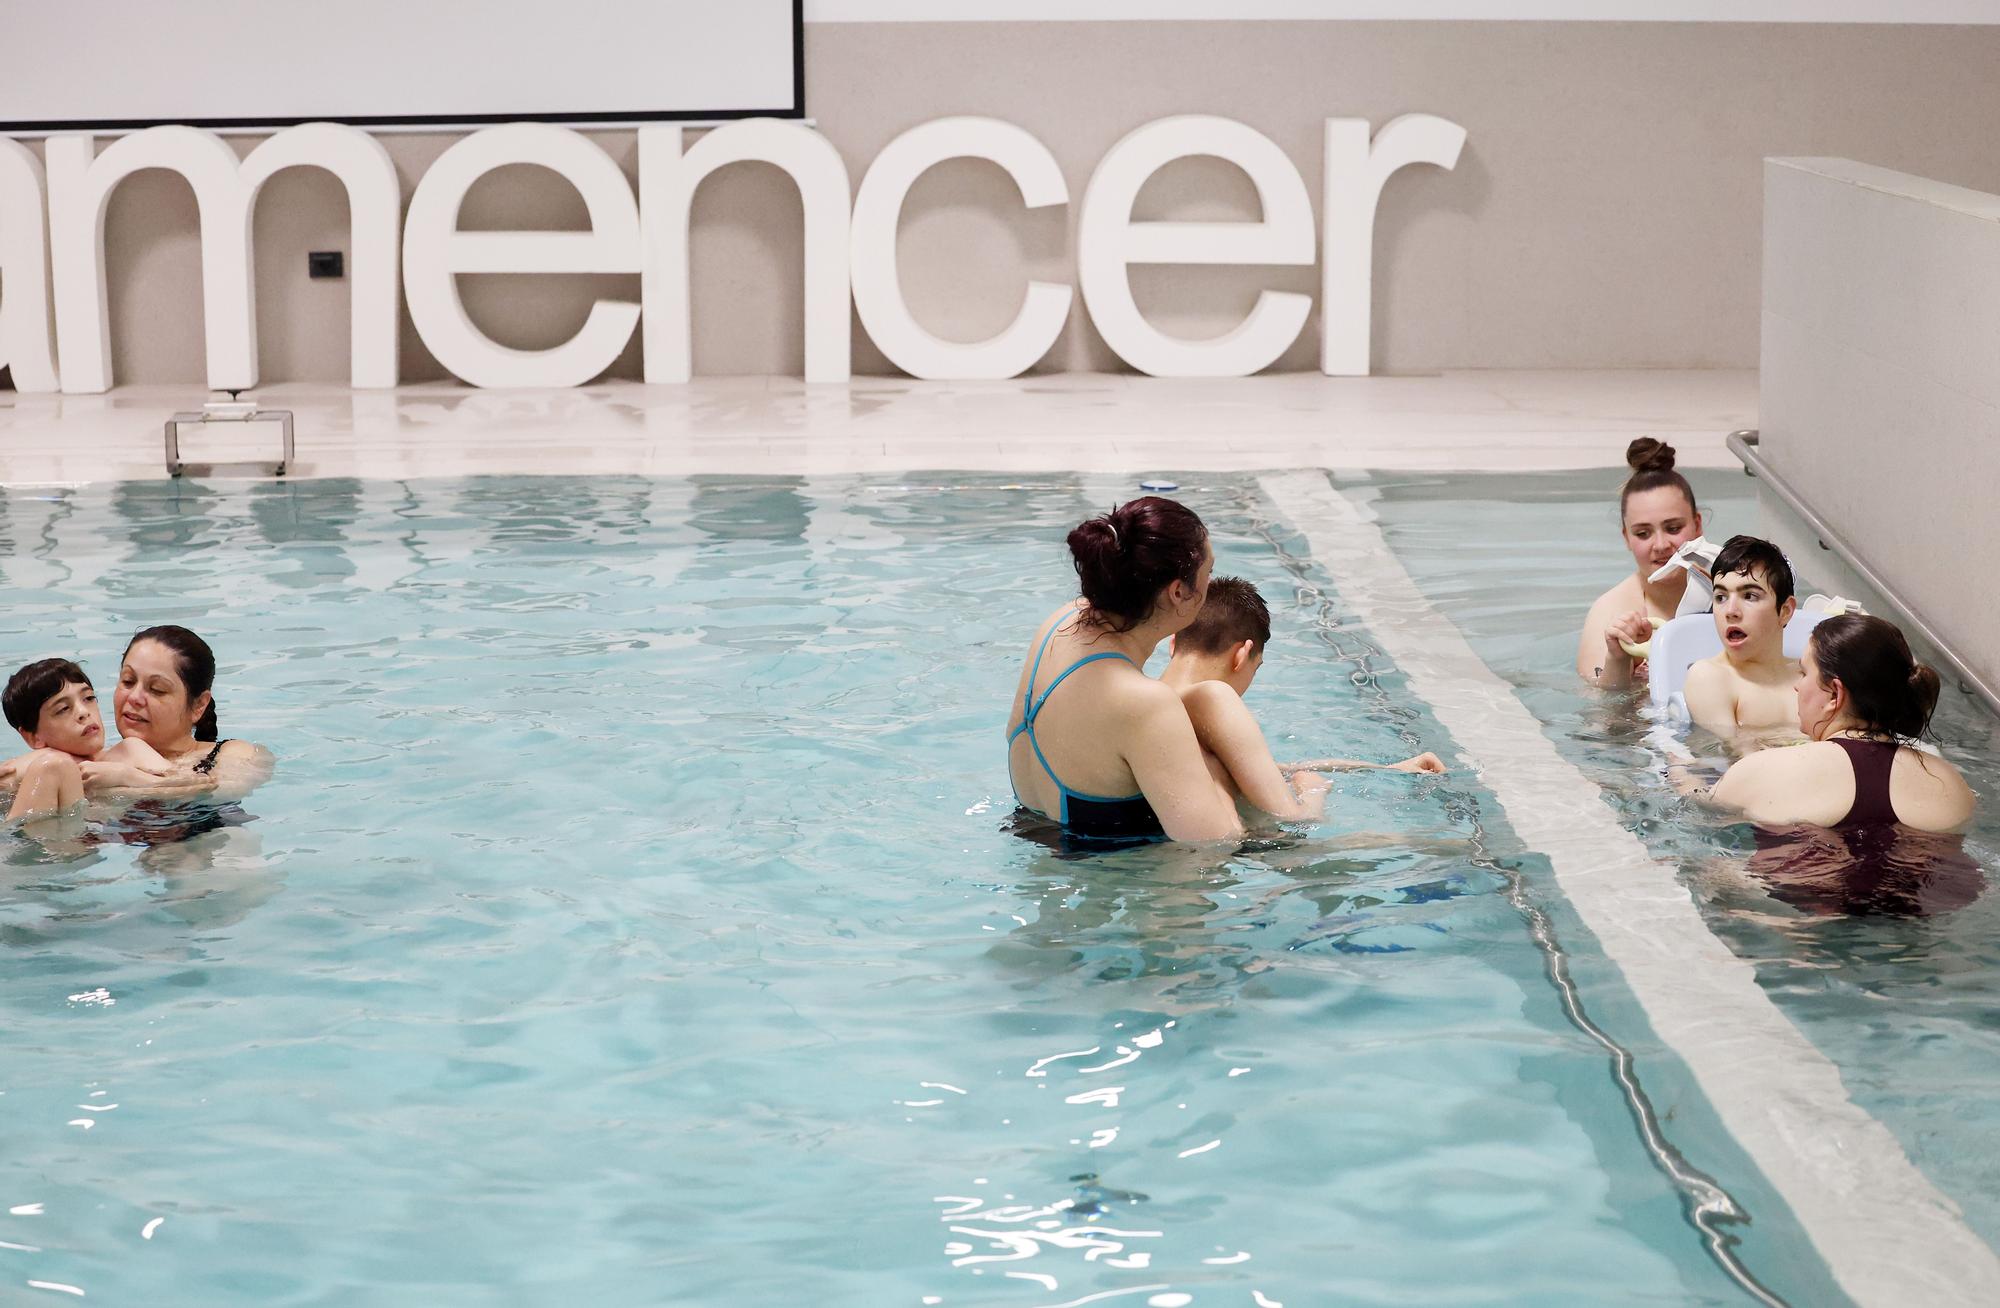 Una terapia tan única como beneficiosa: así es la piscina multisensorial de Amencer-Aspace en Vigo